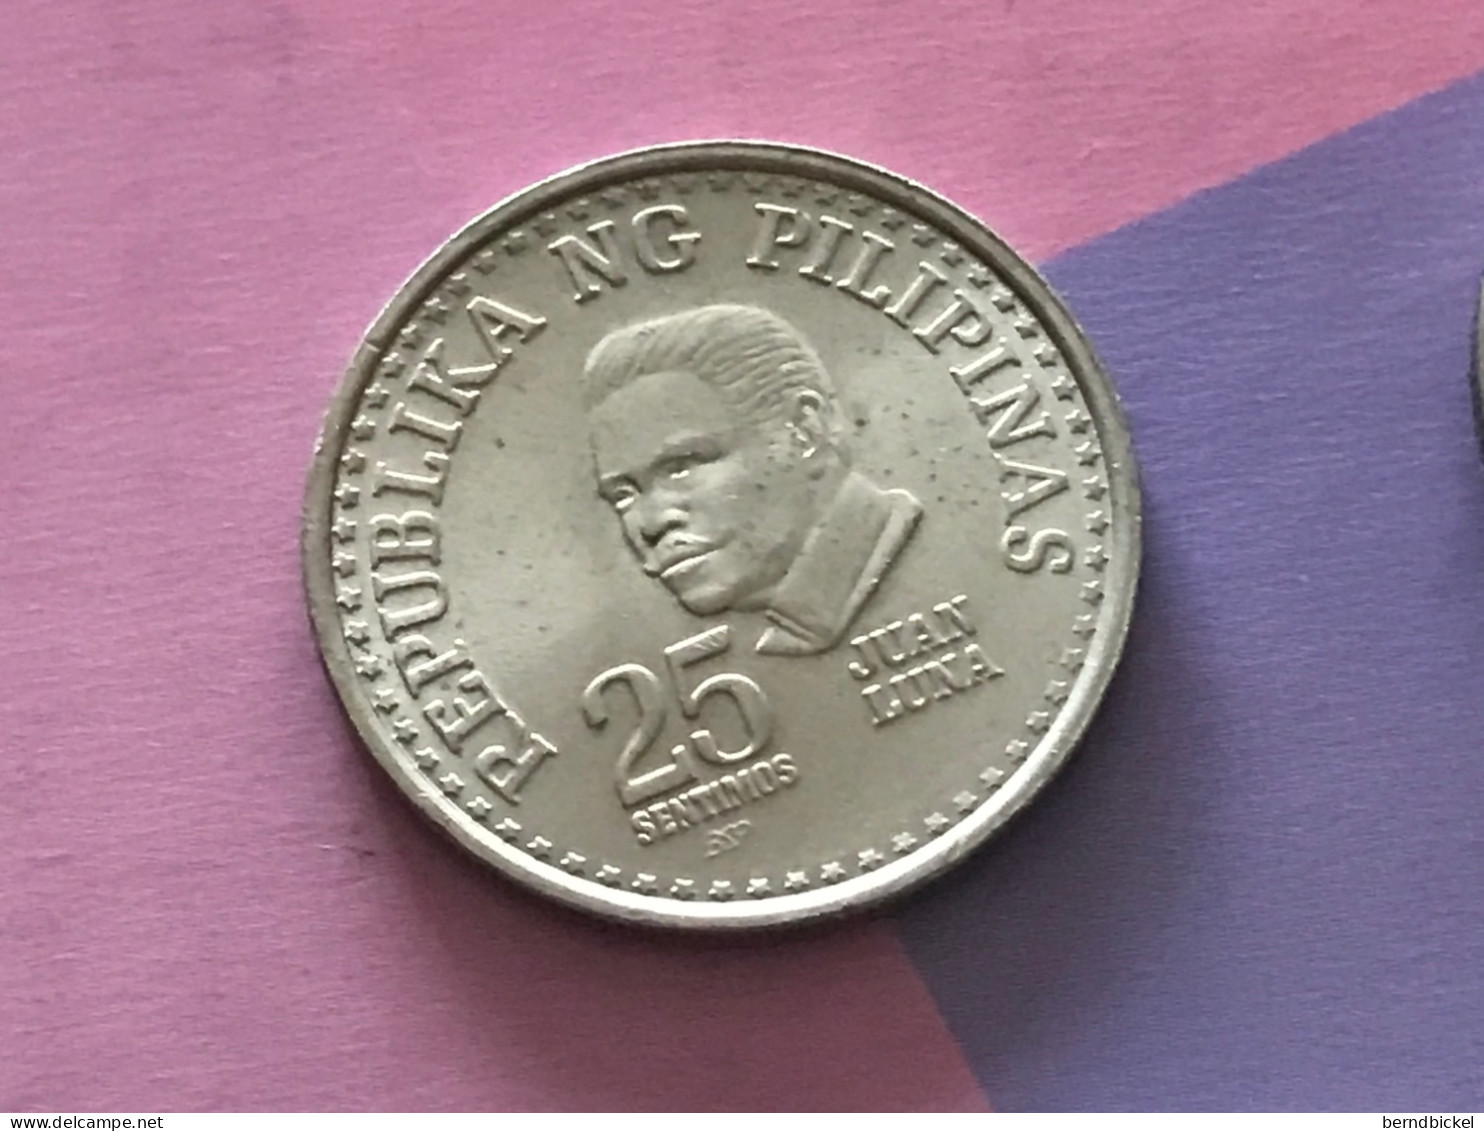 Münze Münzen Umlaufmünze Philippinen 25 Centavos 1979 - Philippines